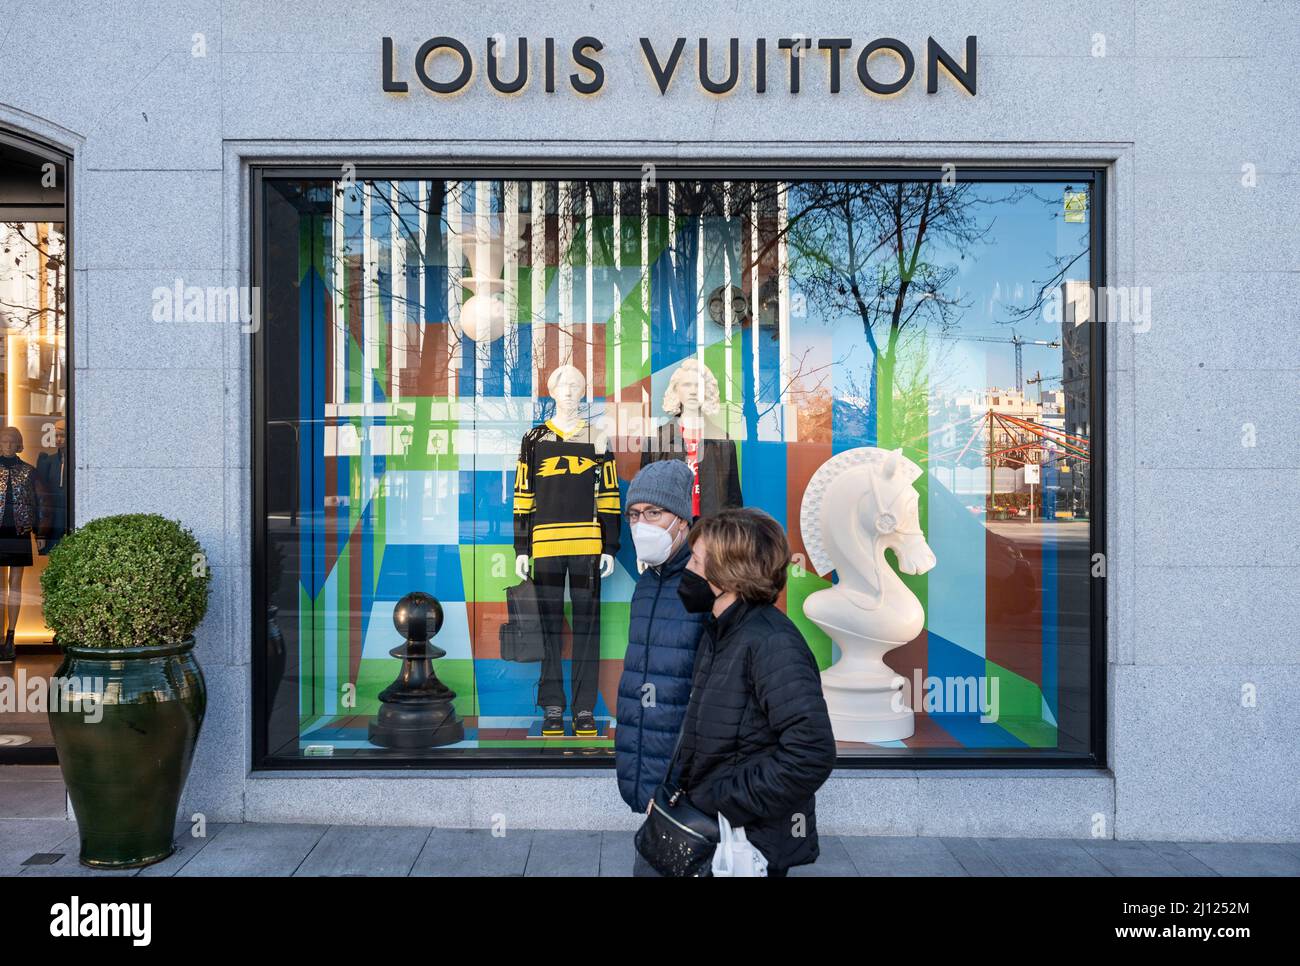 Yayoi Kusama Louis Vuitton - NY July 2012 via Beautiful Window Displays